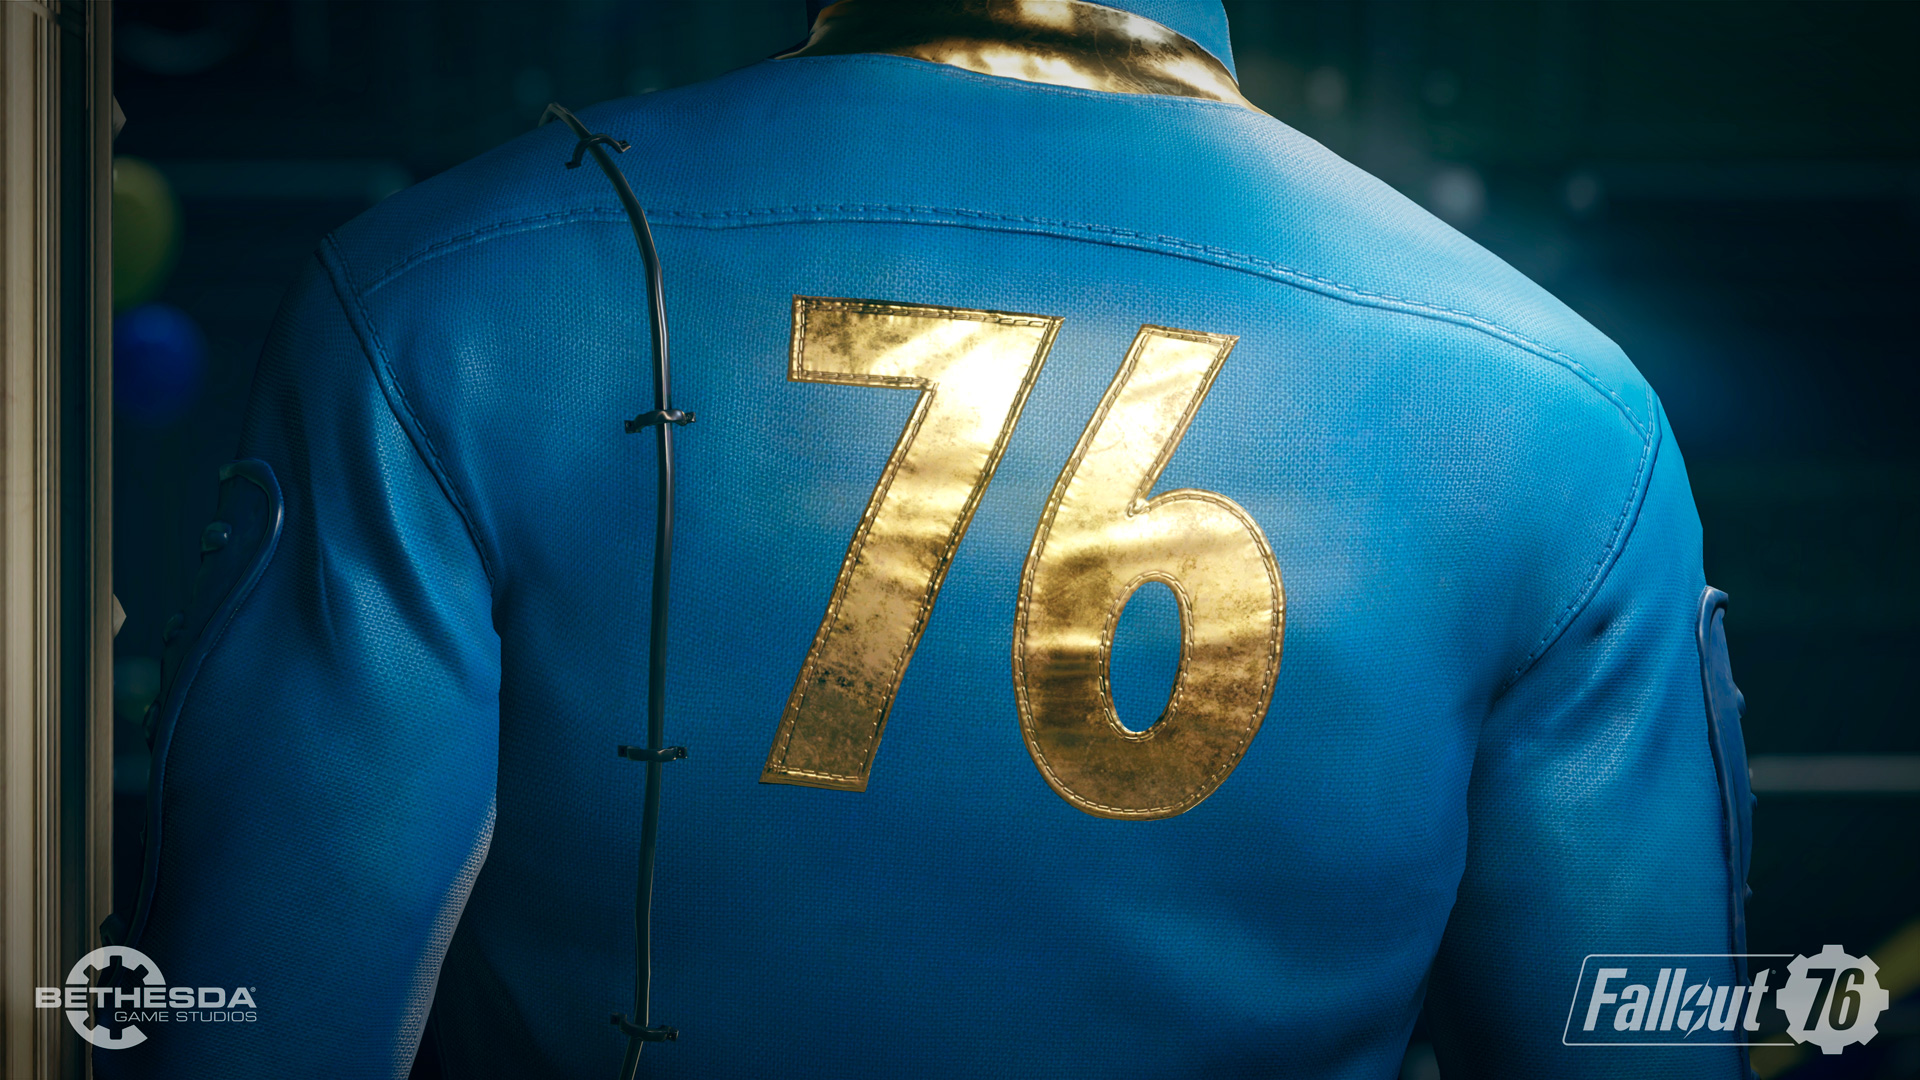 Fallout 76 mediante un tráiler teaser